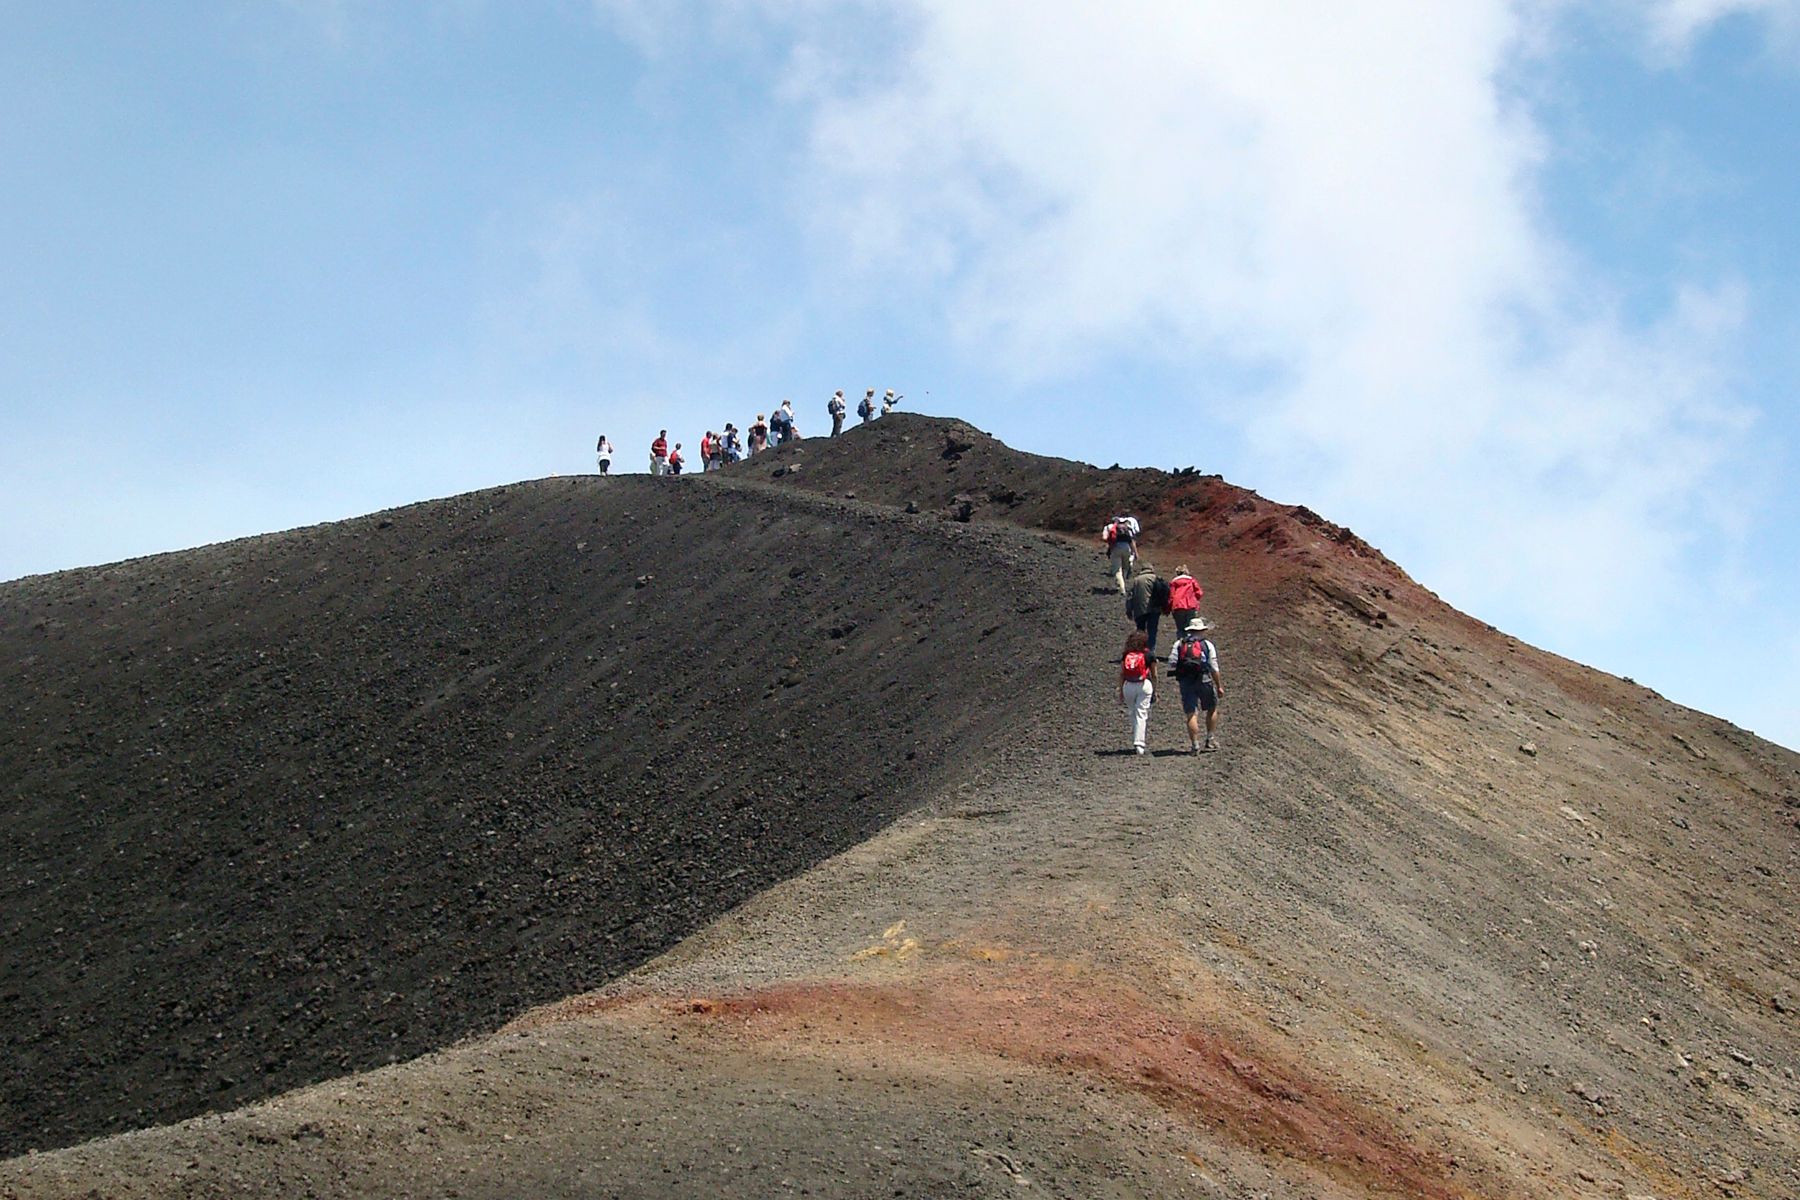 Visiting Mount Etna